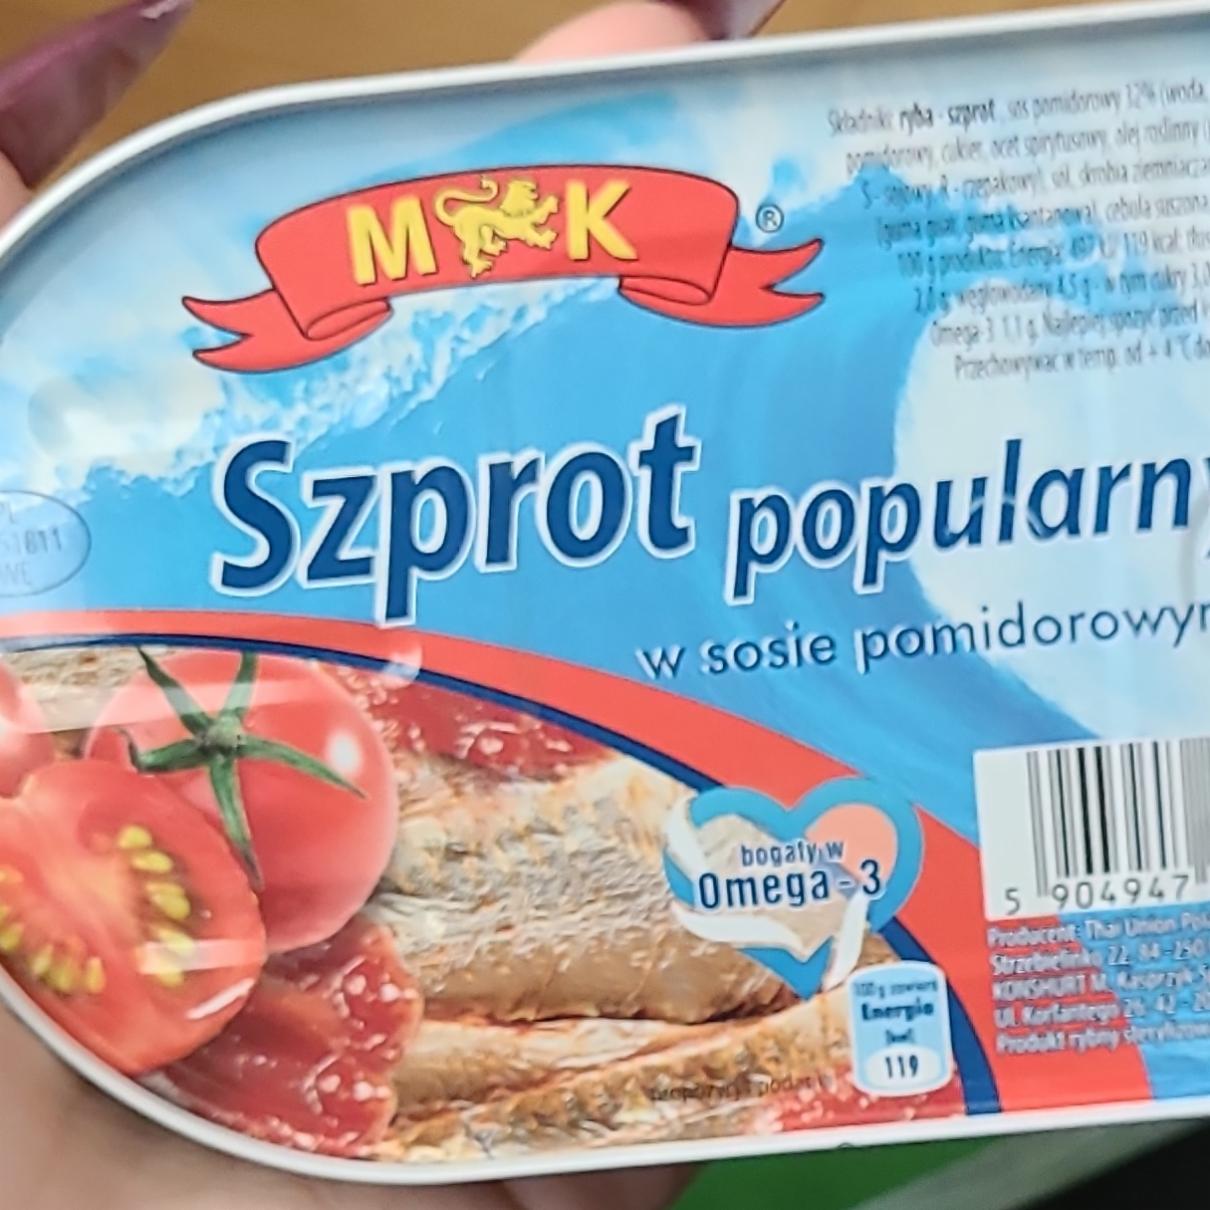 Фото - Szprot popularny w sosie pomidorowym MK